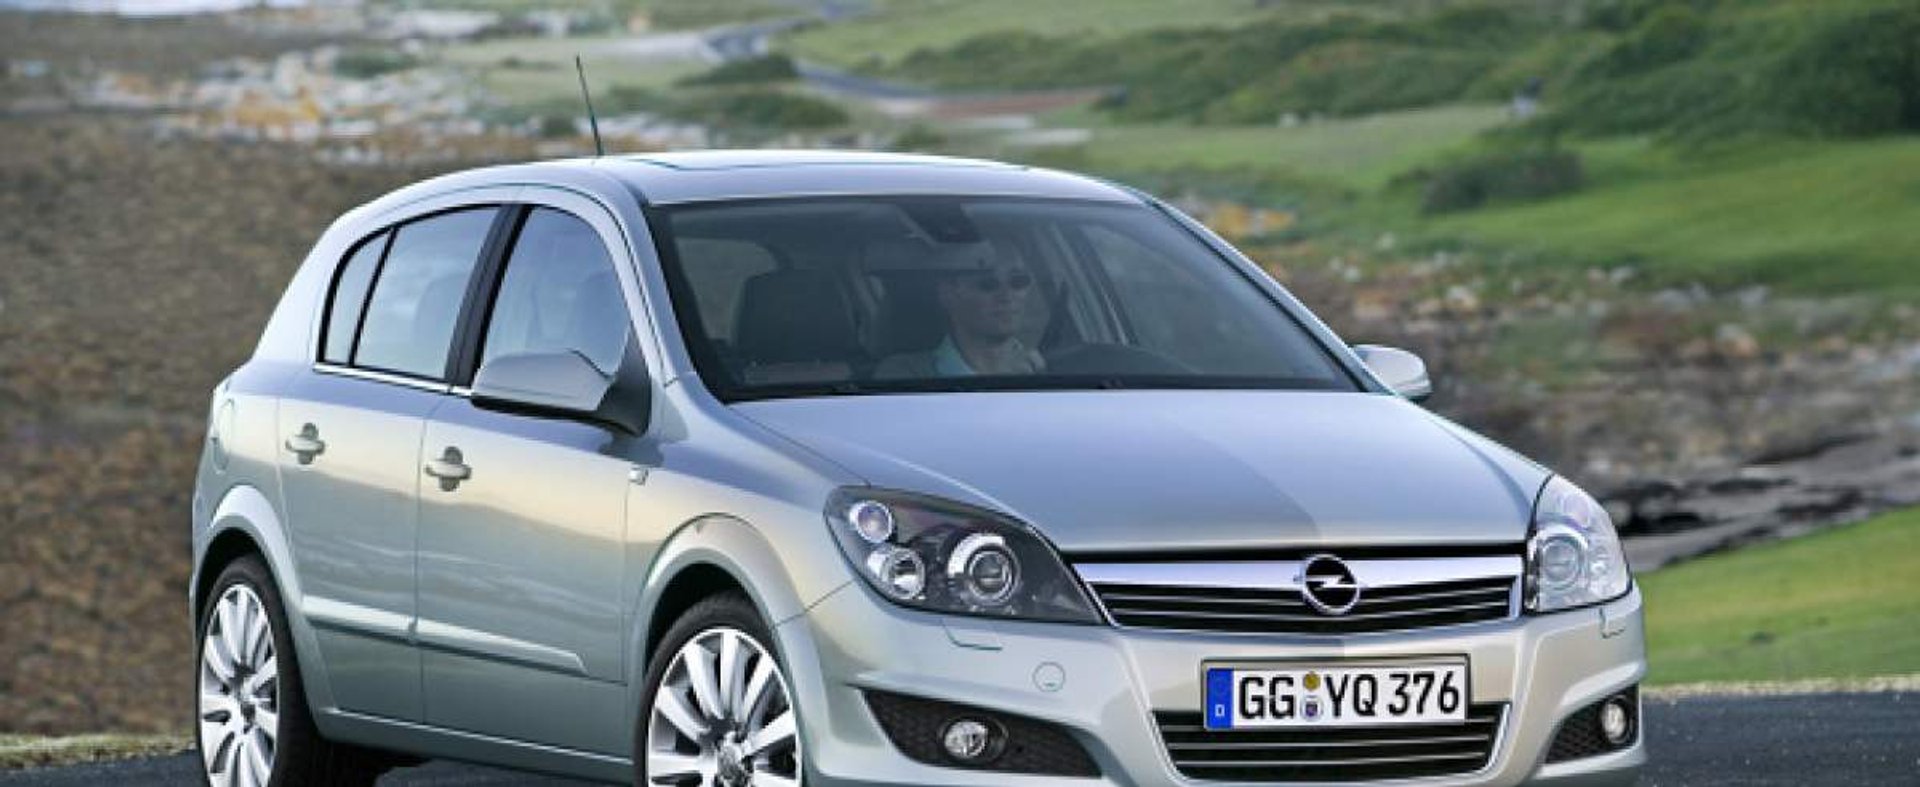 Opel Astra III generacji – kwintesencja kompaktowego samochodu